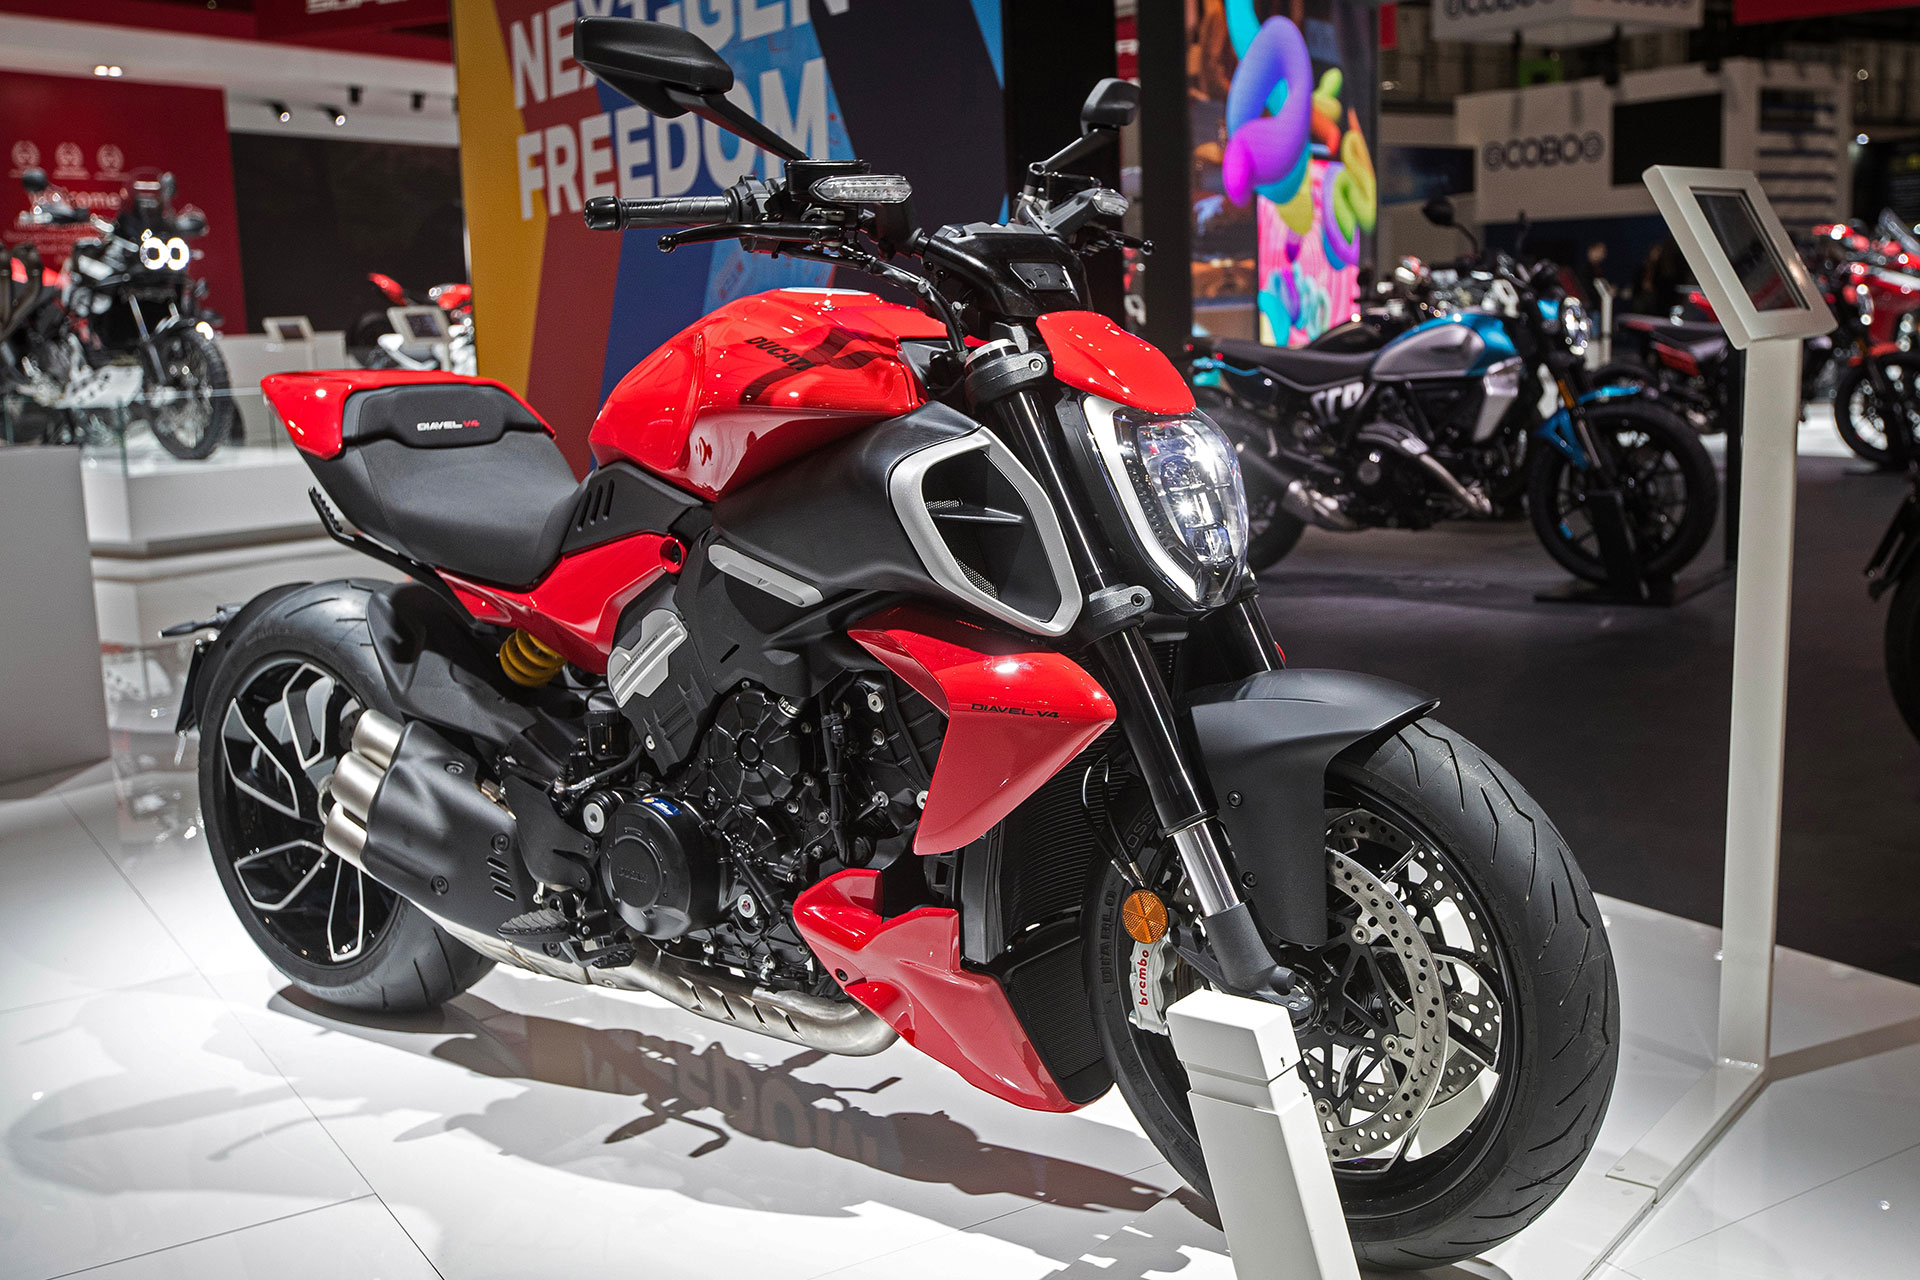 La Ducati Diavel V4 es elegida la “Moto más Bonita” del EICMA 2022